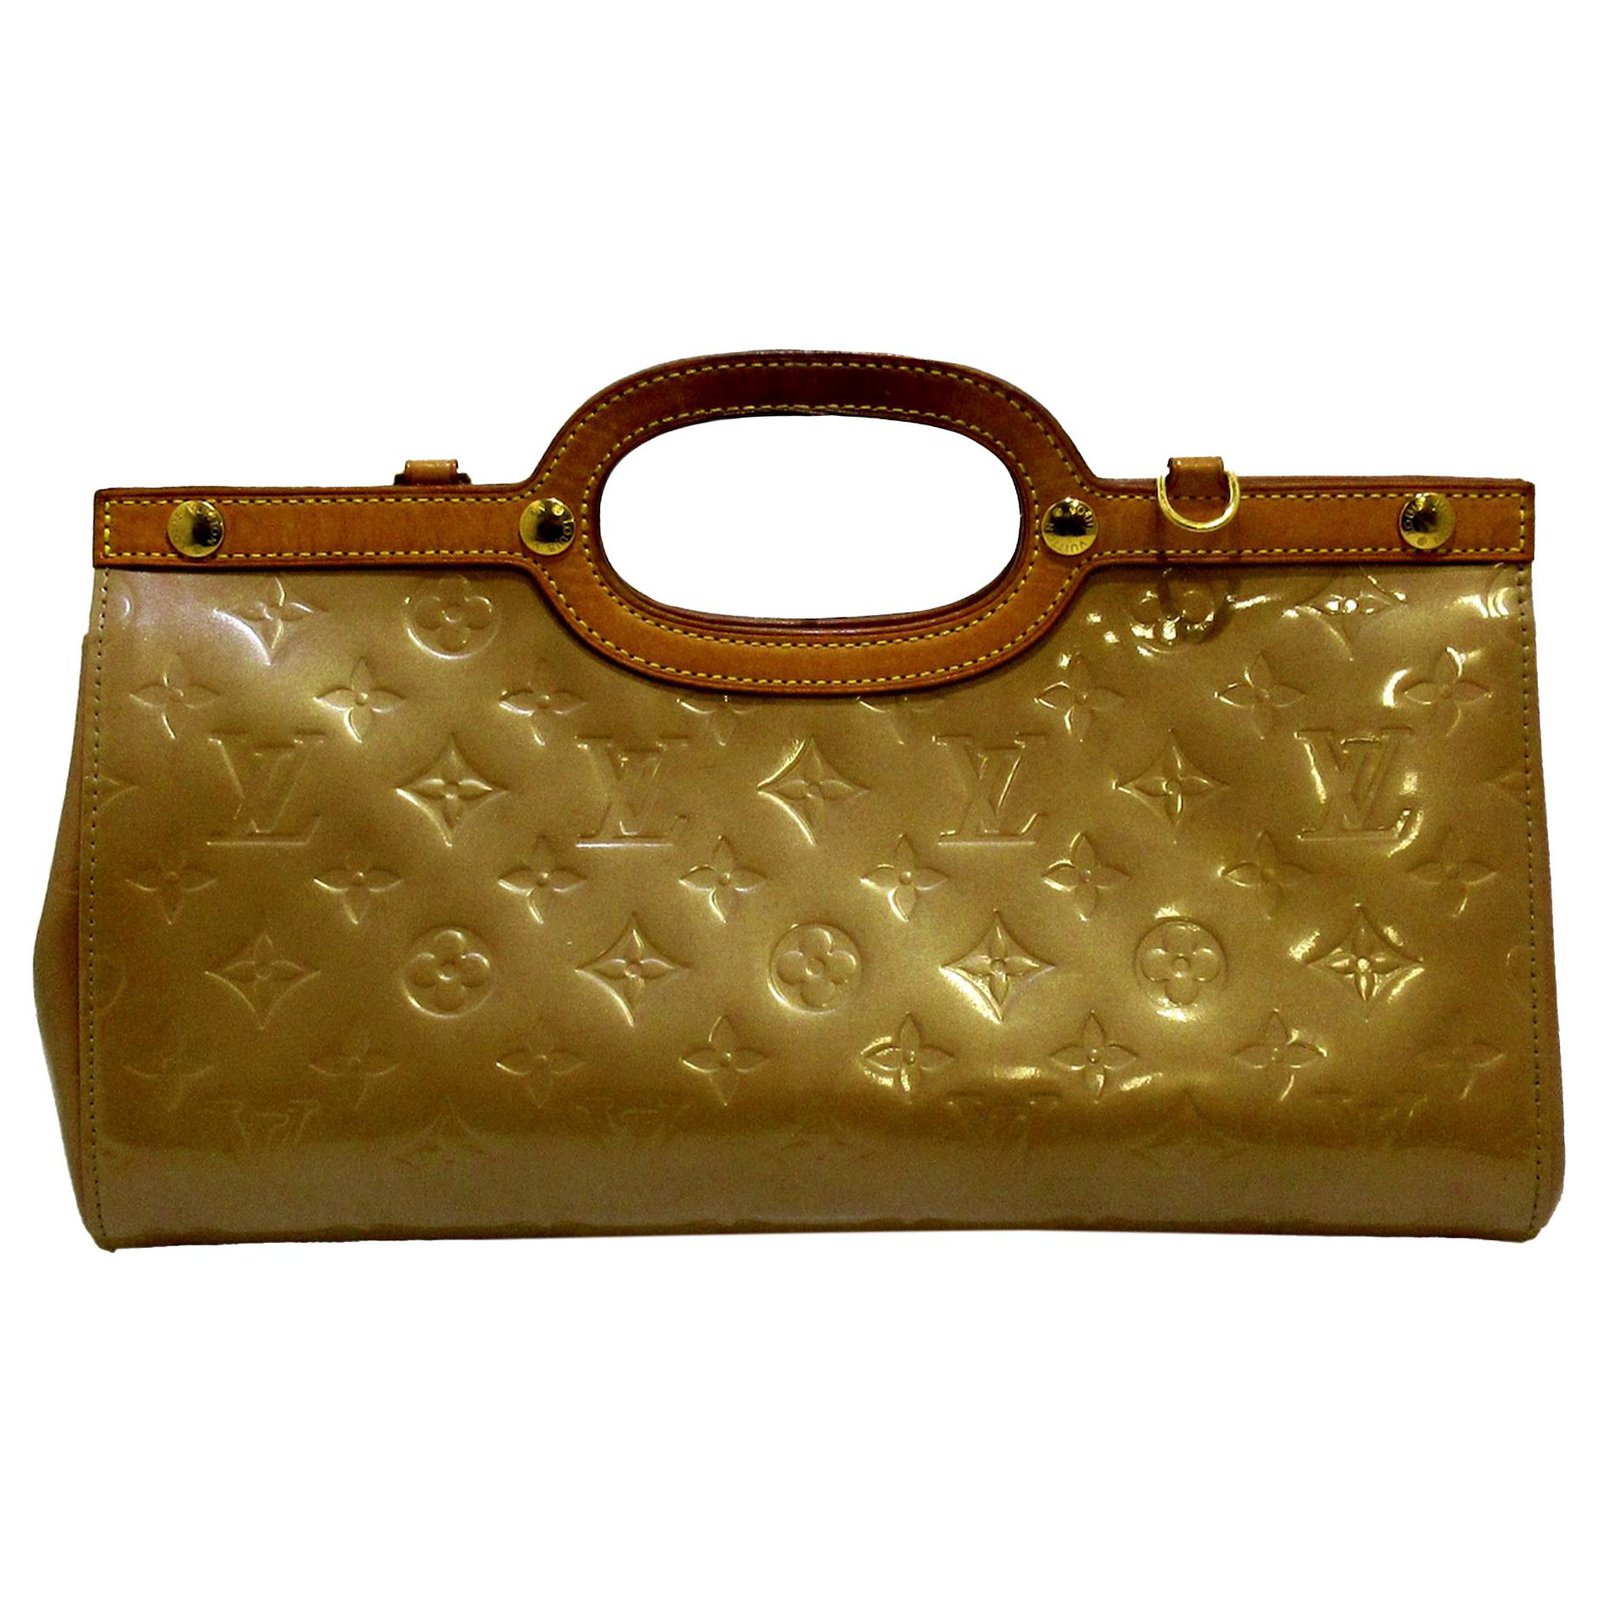 Louis Vuitton Roxbury Drive Vernis Leather Shoulder Bag